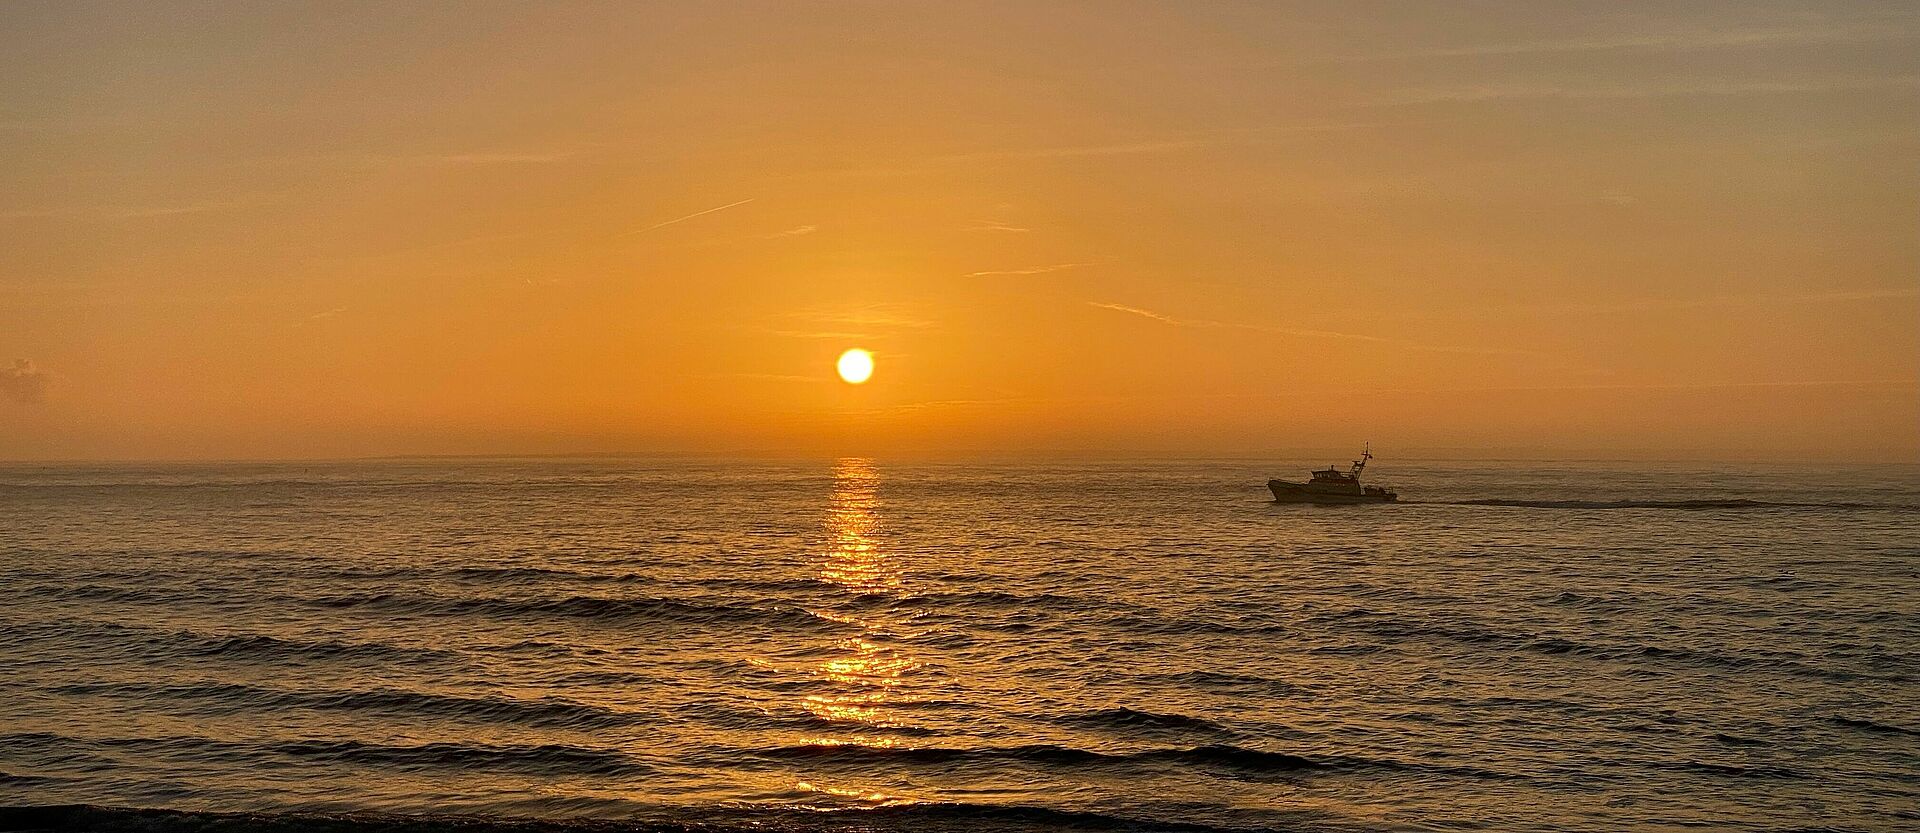 Ein Seenotrettungskreuzer fährt während dem Sonnenuntergang auf den Horizont zu.